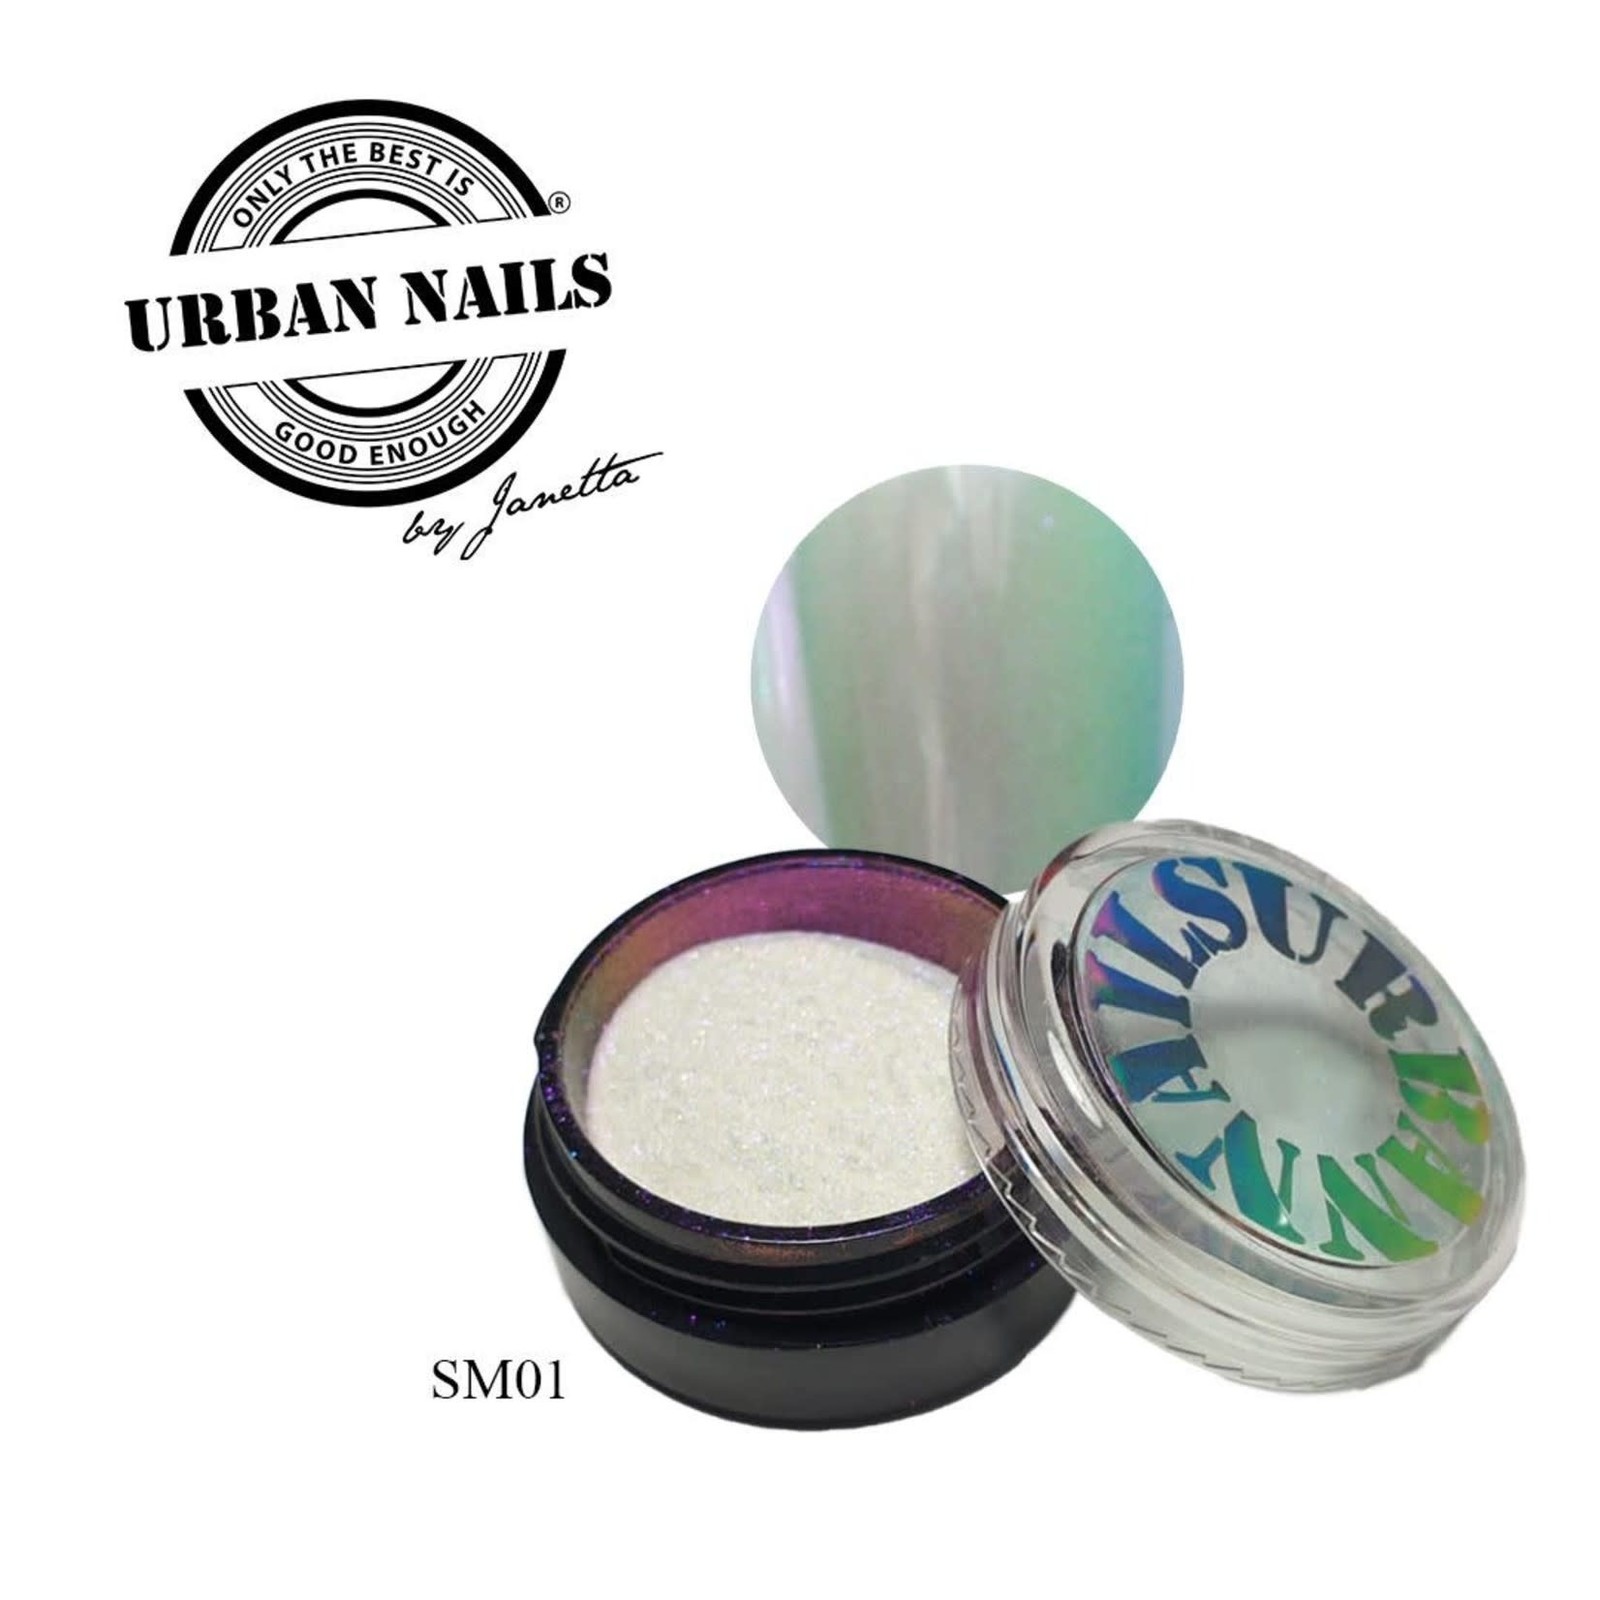 Urban nails Super Mirror Pigment SM01